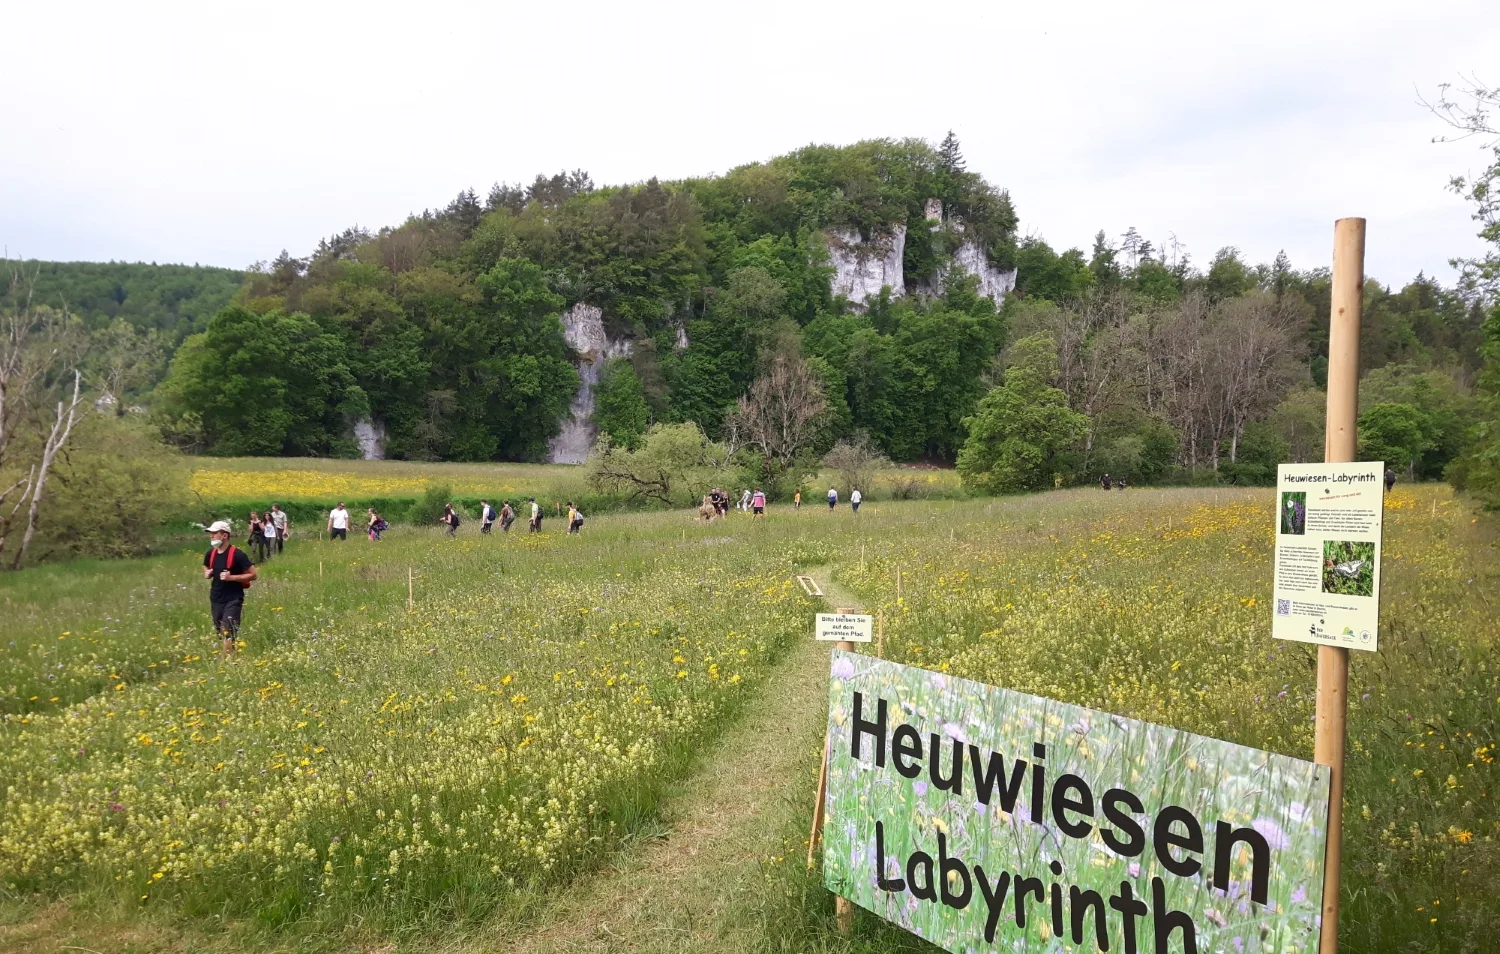 Bild von einer Wiese mit Hinweisschild: Heuwiesen Labyrinth mit einigen Personen und bewaldeten Felsen im Hintergrund